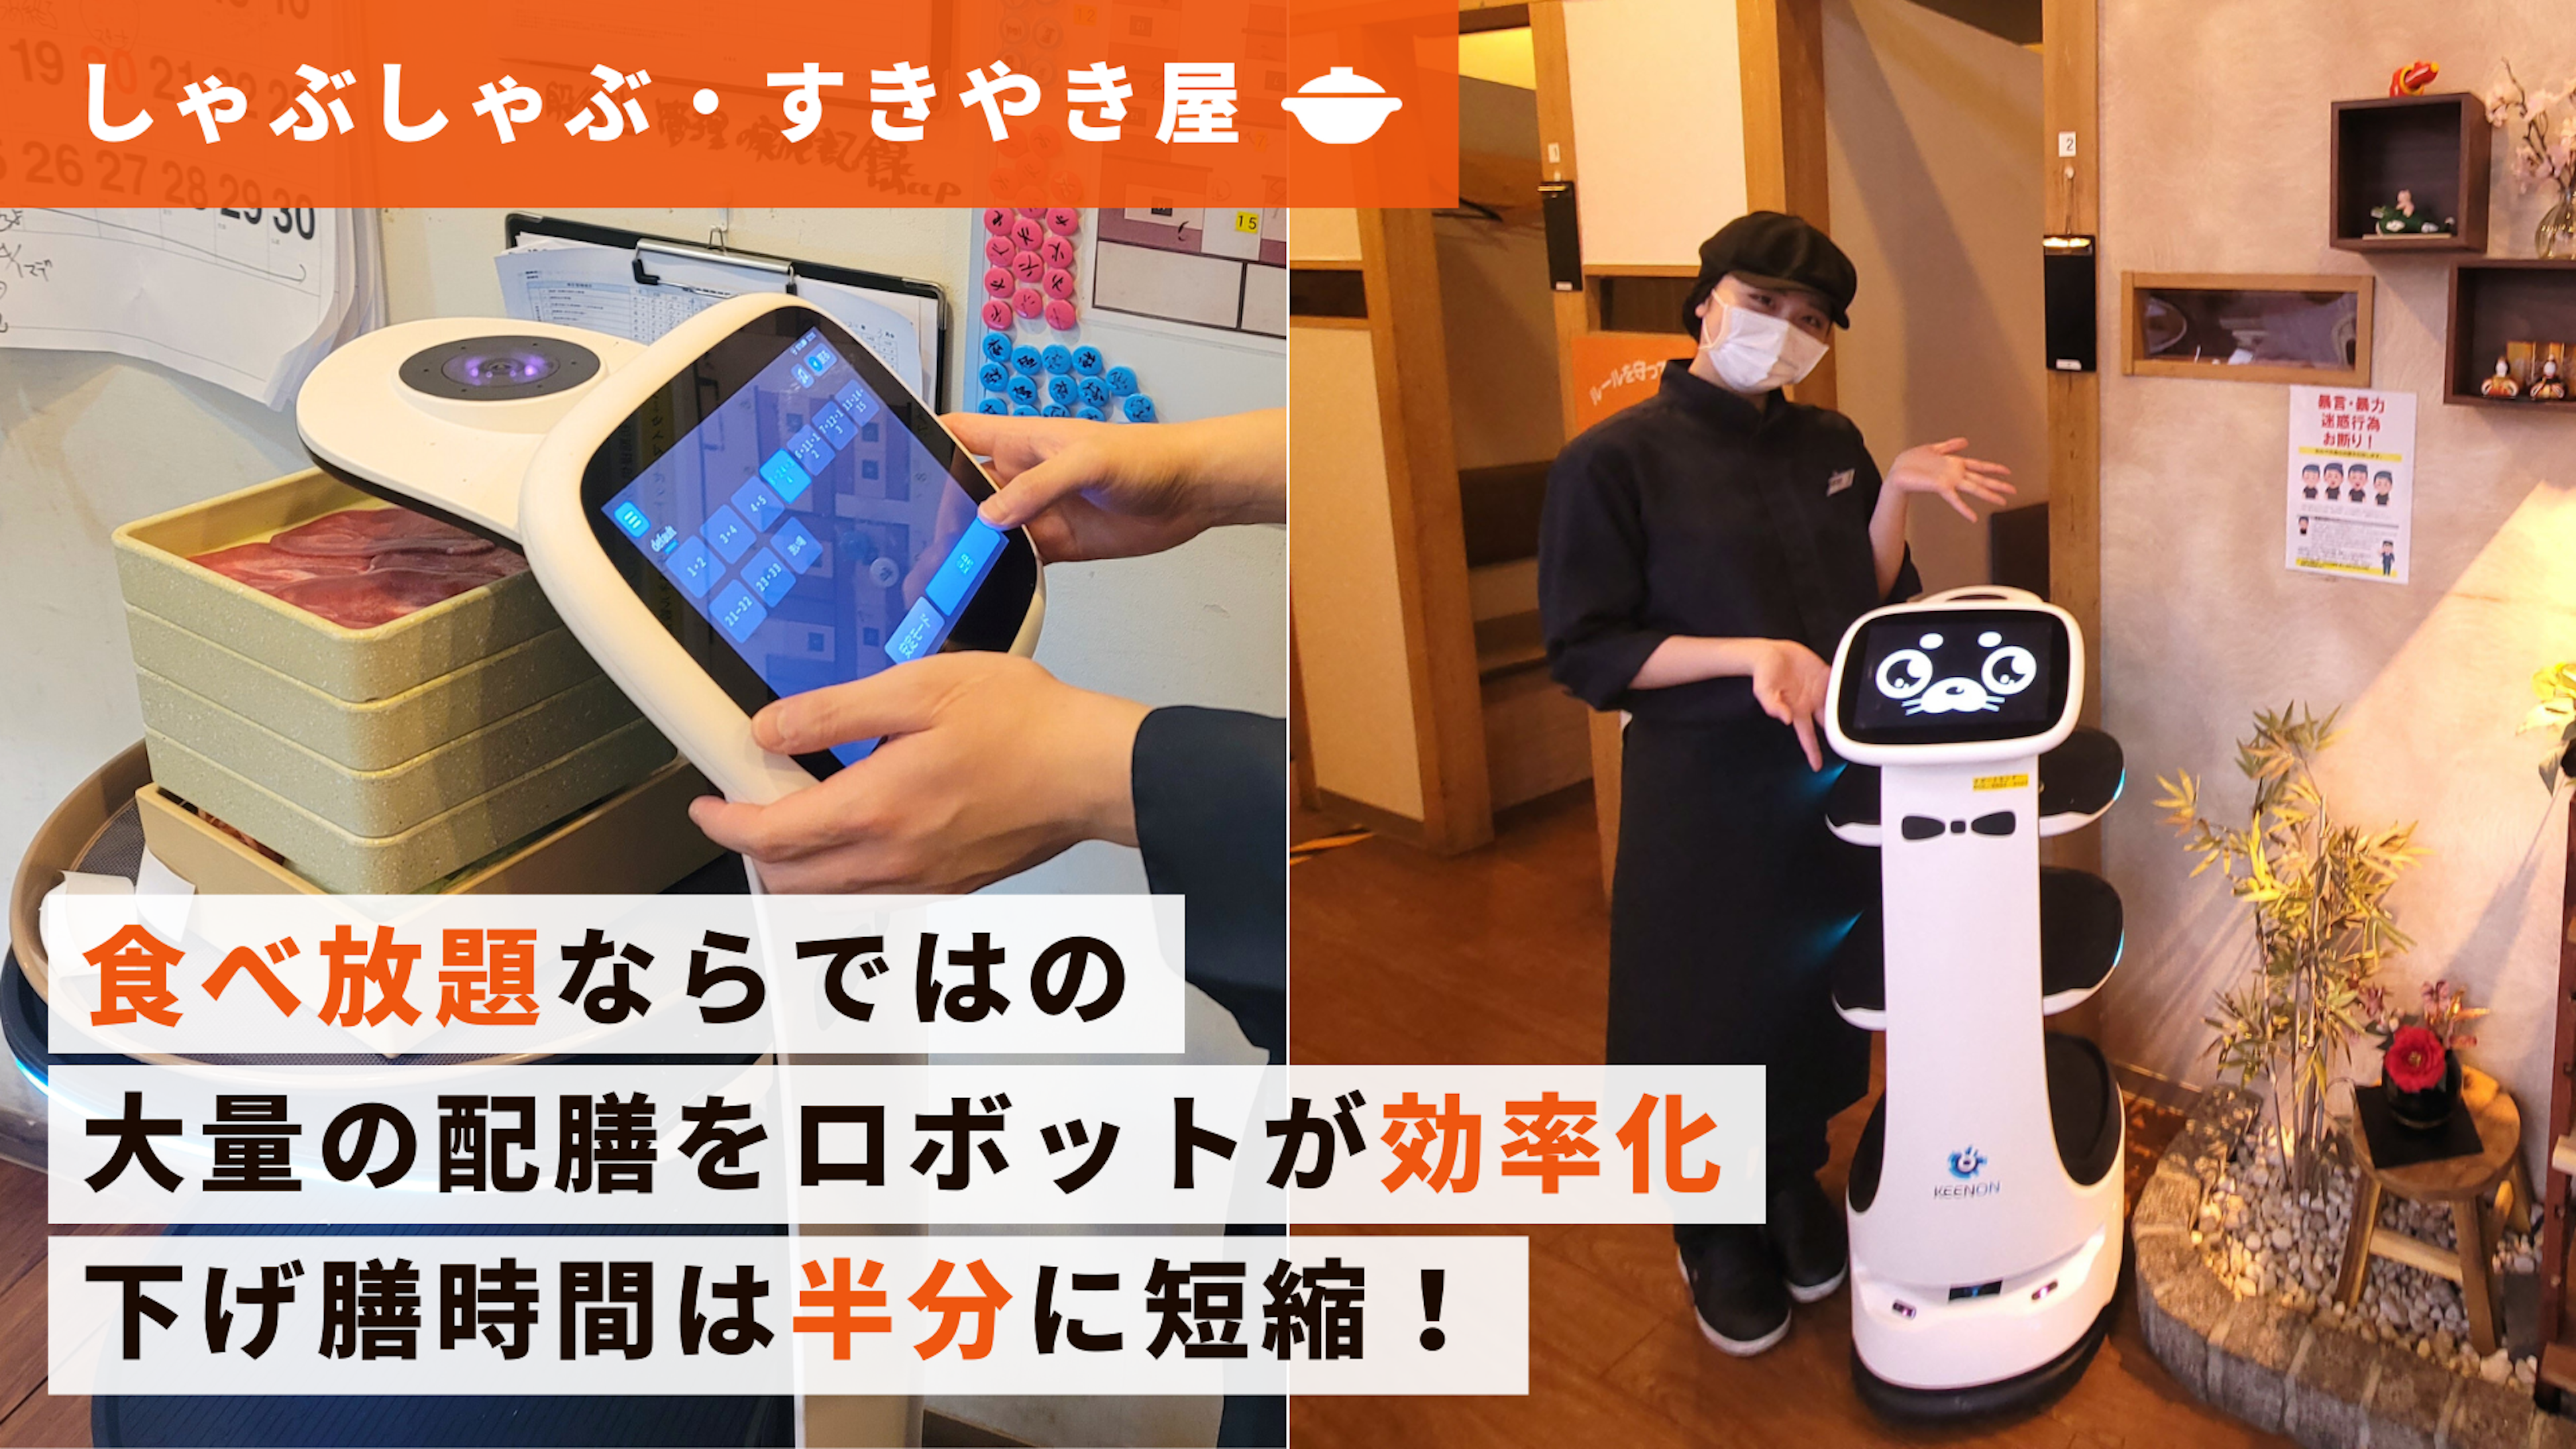 【しゃぶしゃぶ屋導入事例】小回りの効く小型配膳ロボット「KEENON T8」